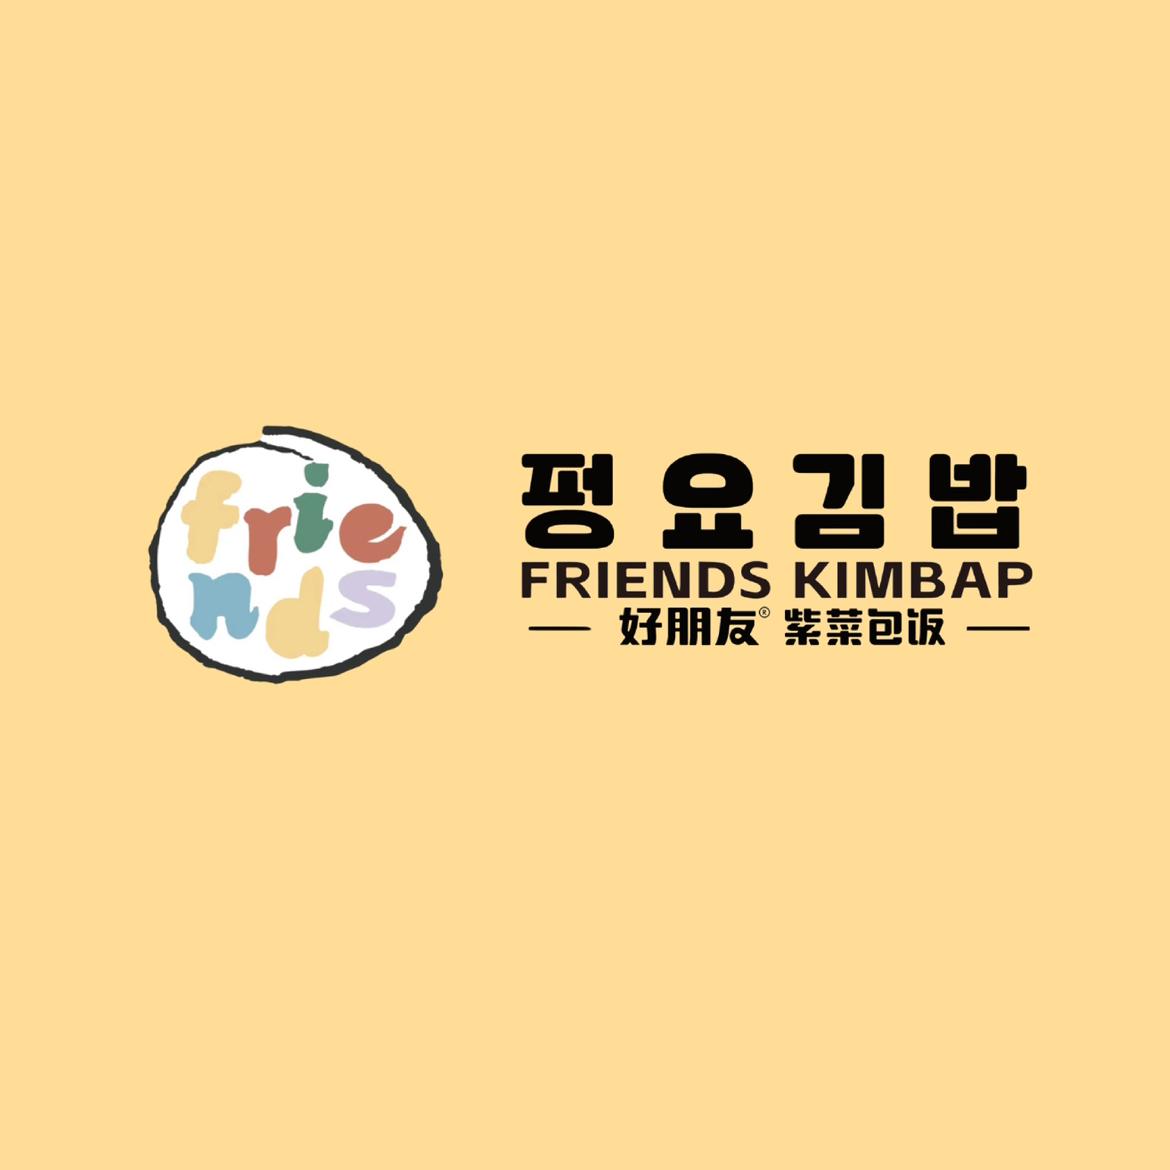 Friends Kimbap's images